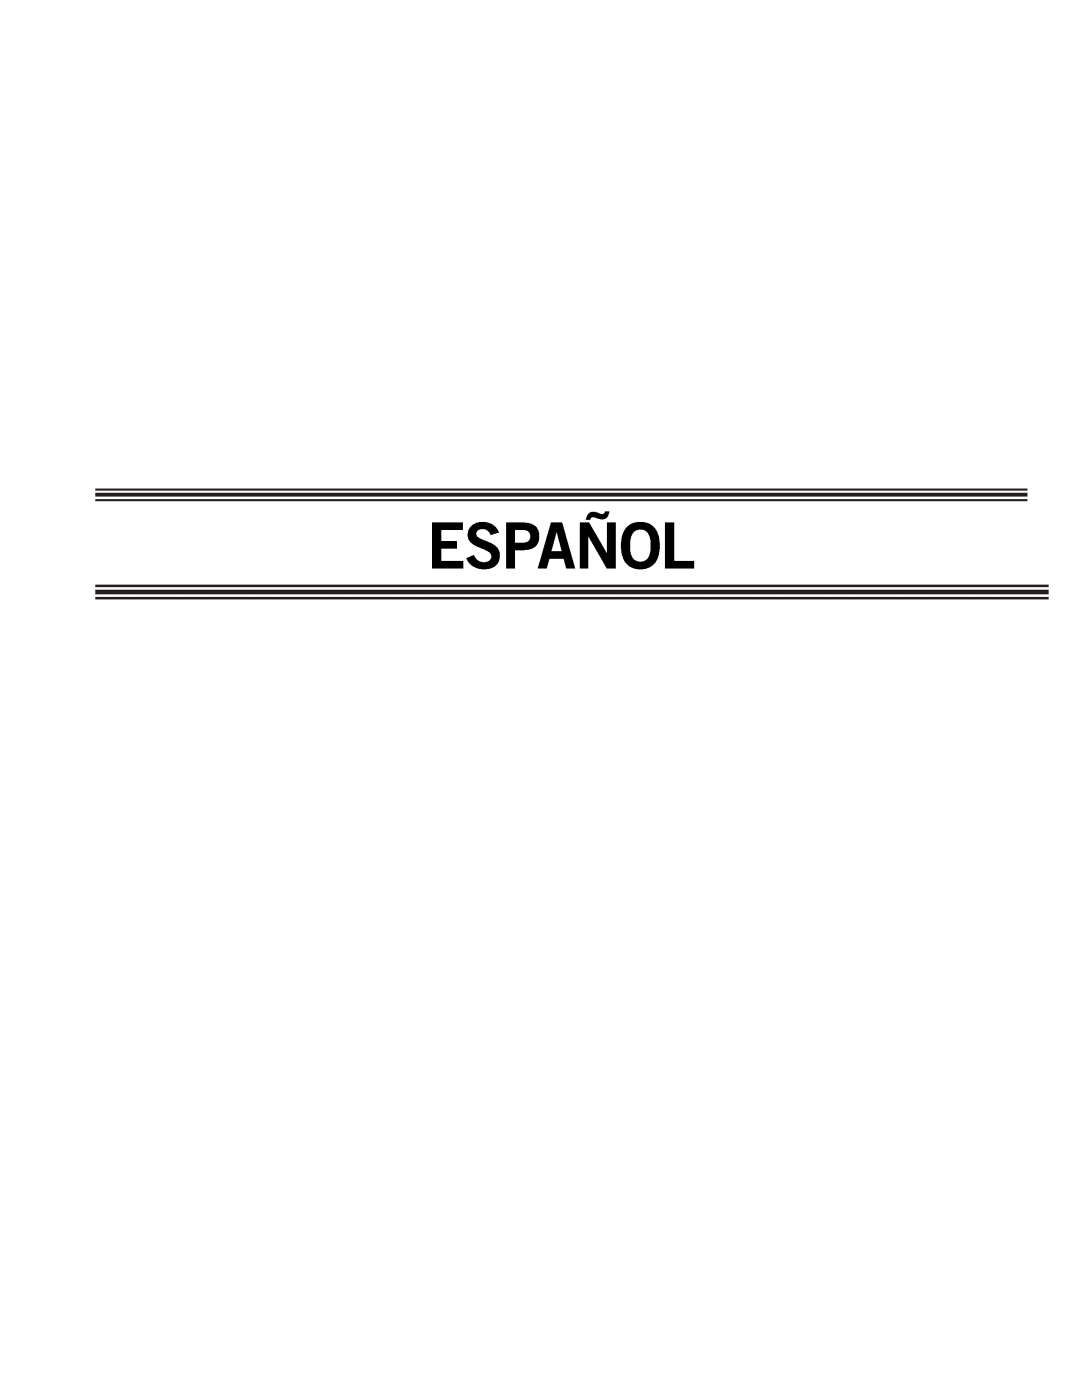 Delta AP-100 instruction manual Español 